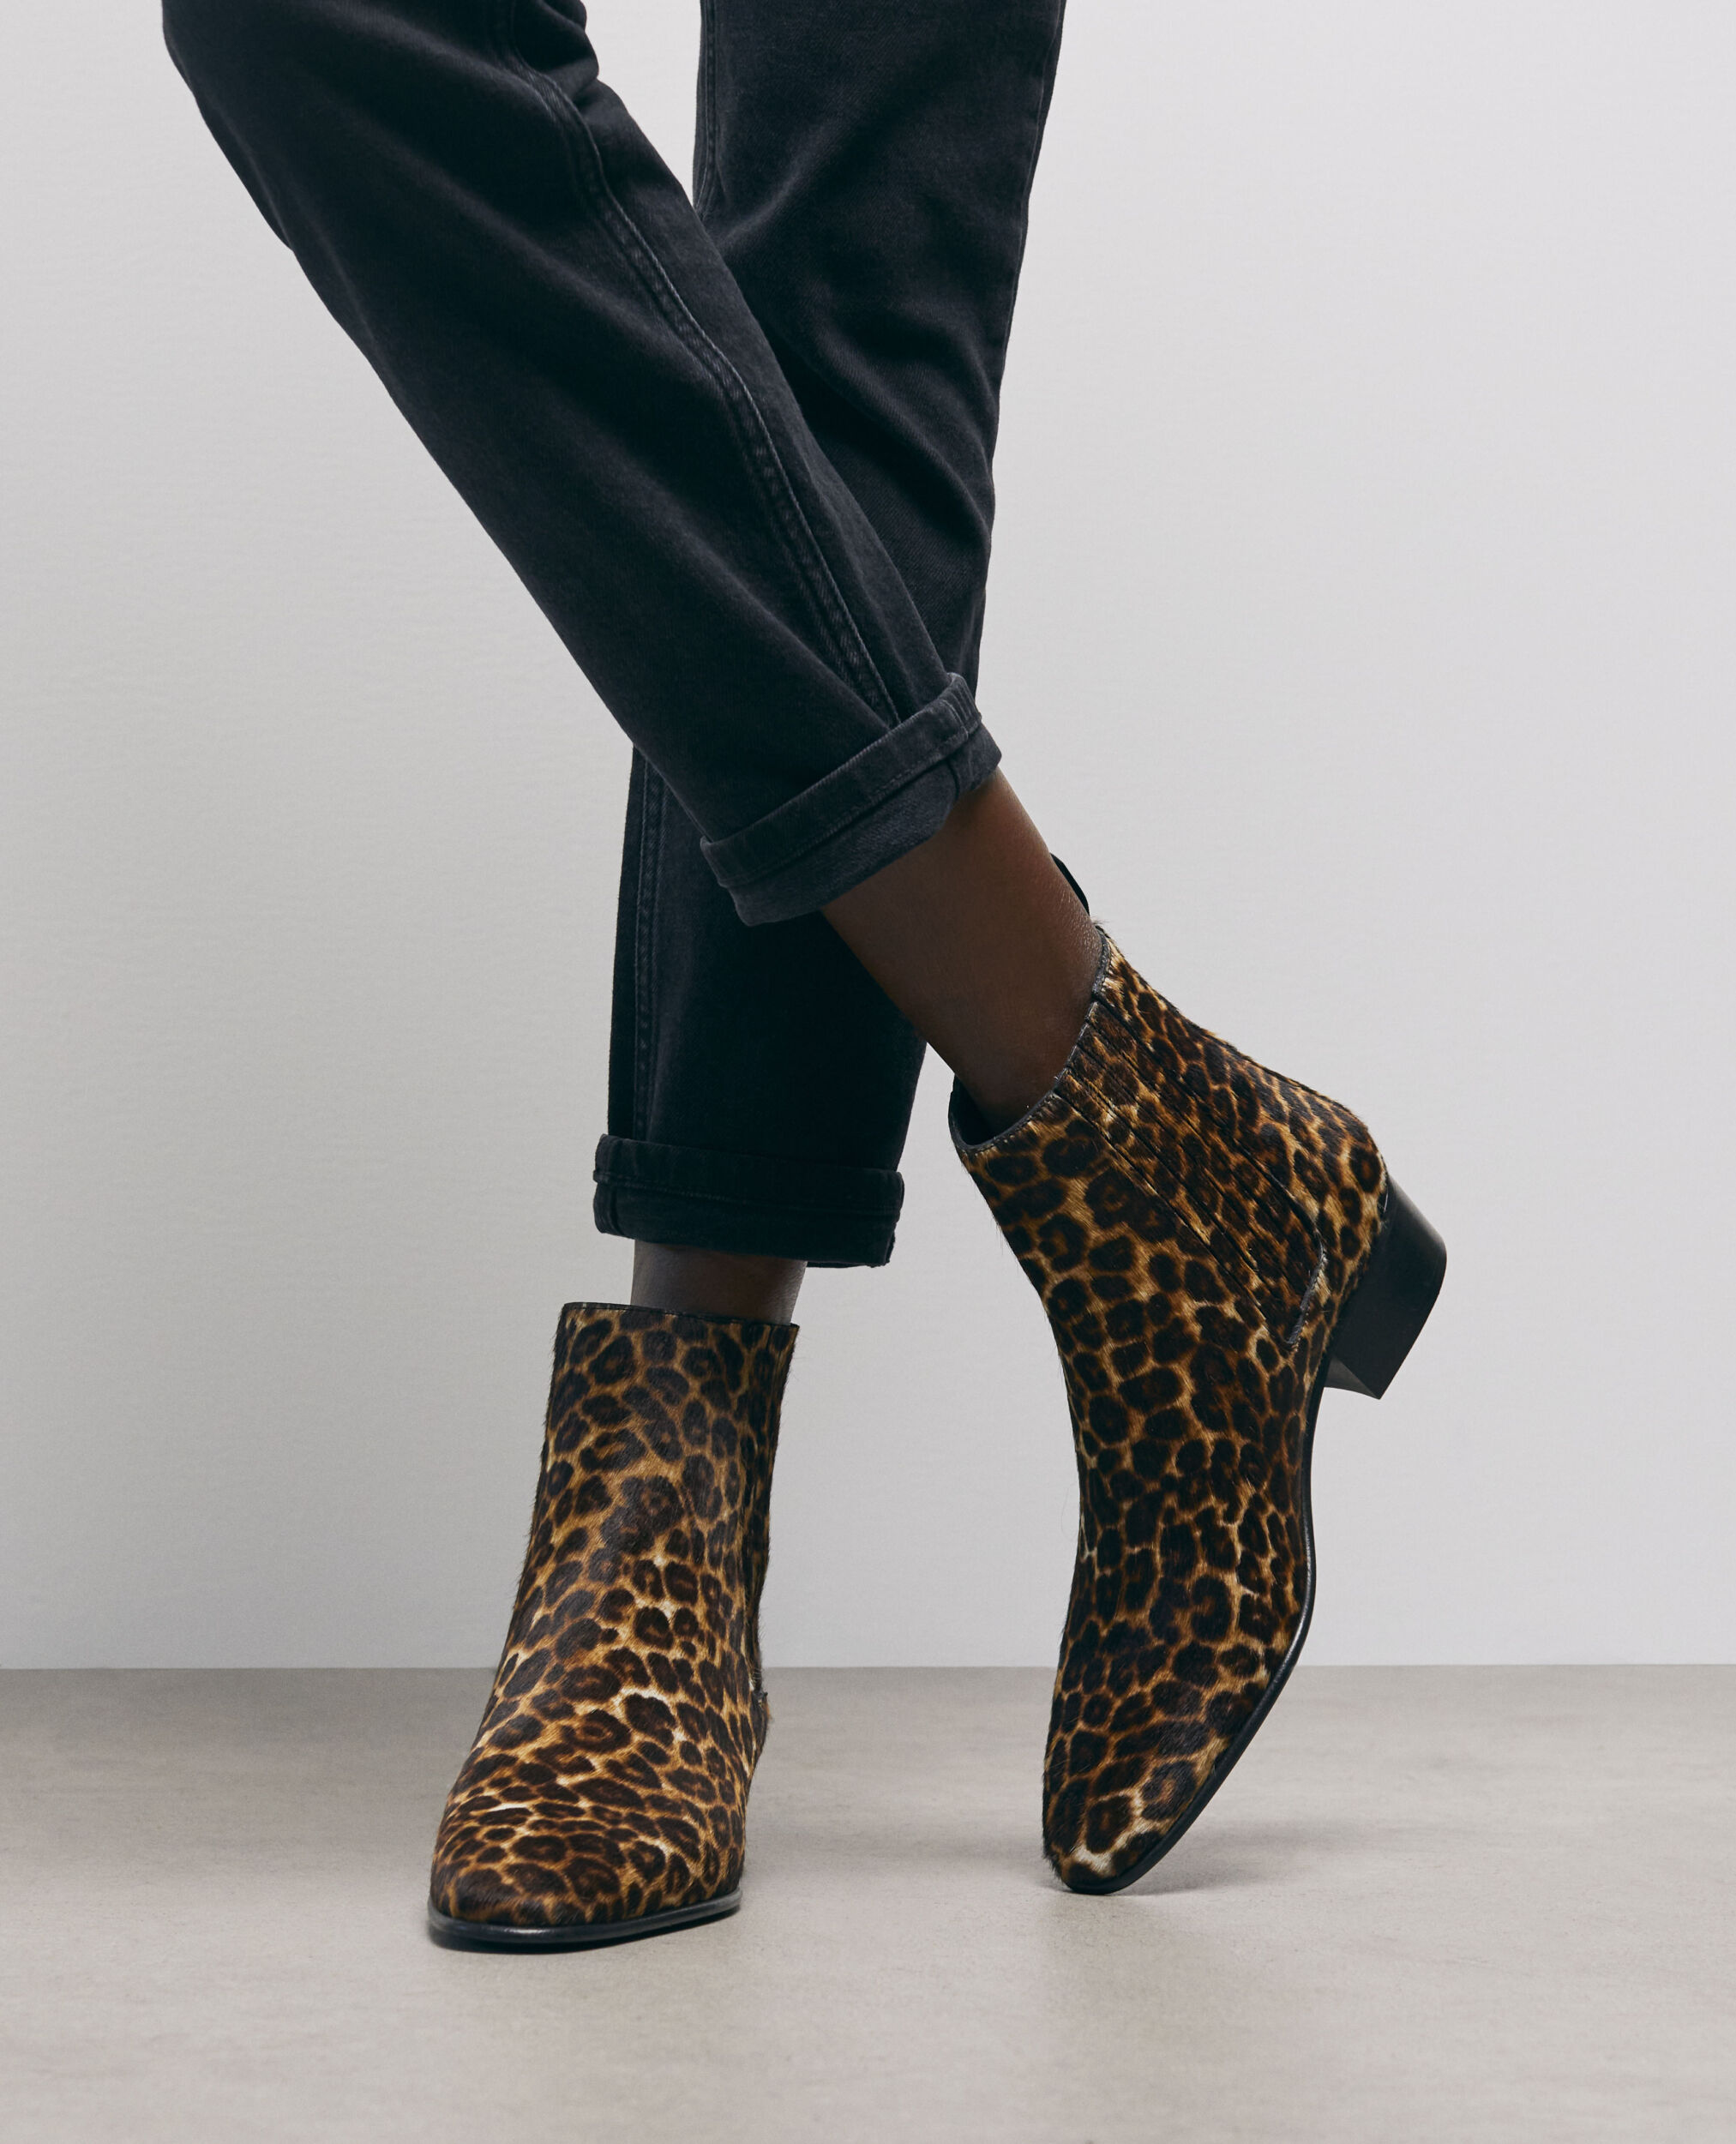 Botas de piel con leopardo The Kooples: prenda de la temporada! Descubre nuestra selección de calzado de mujer en el sitio web y en tiendas.